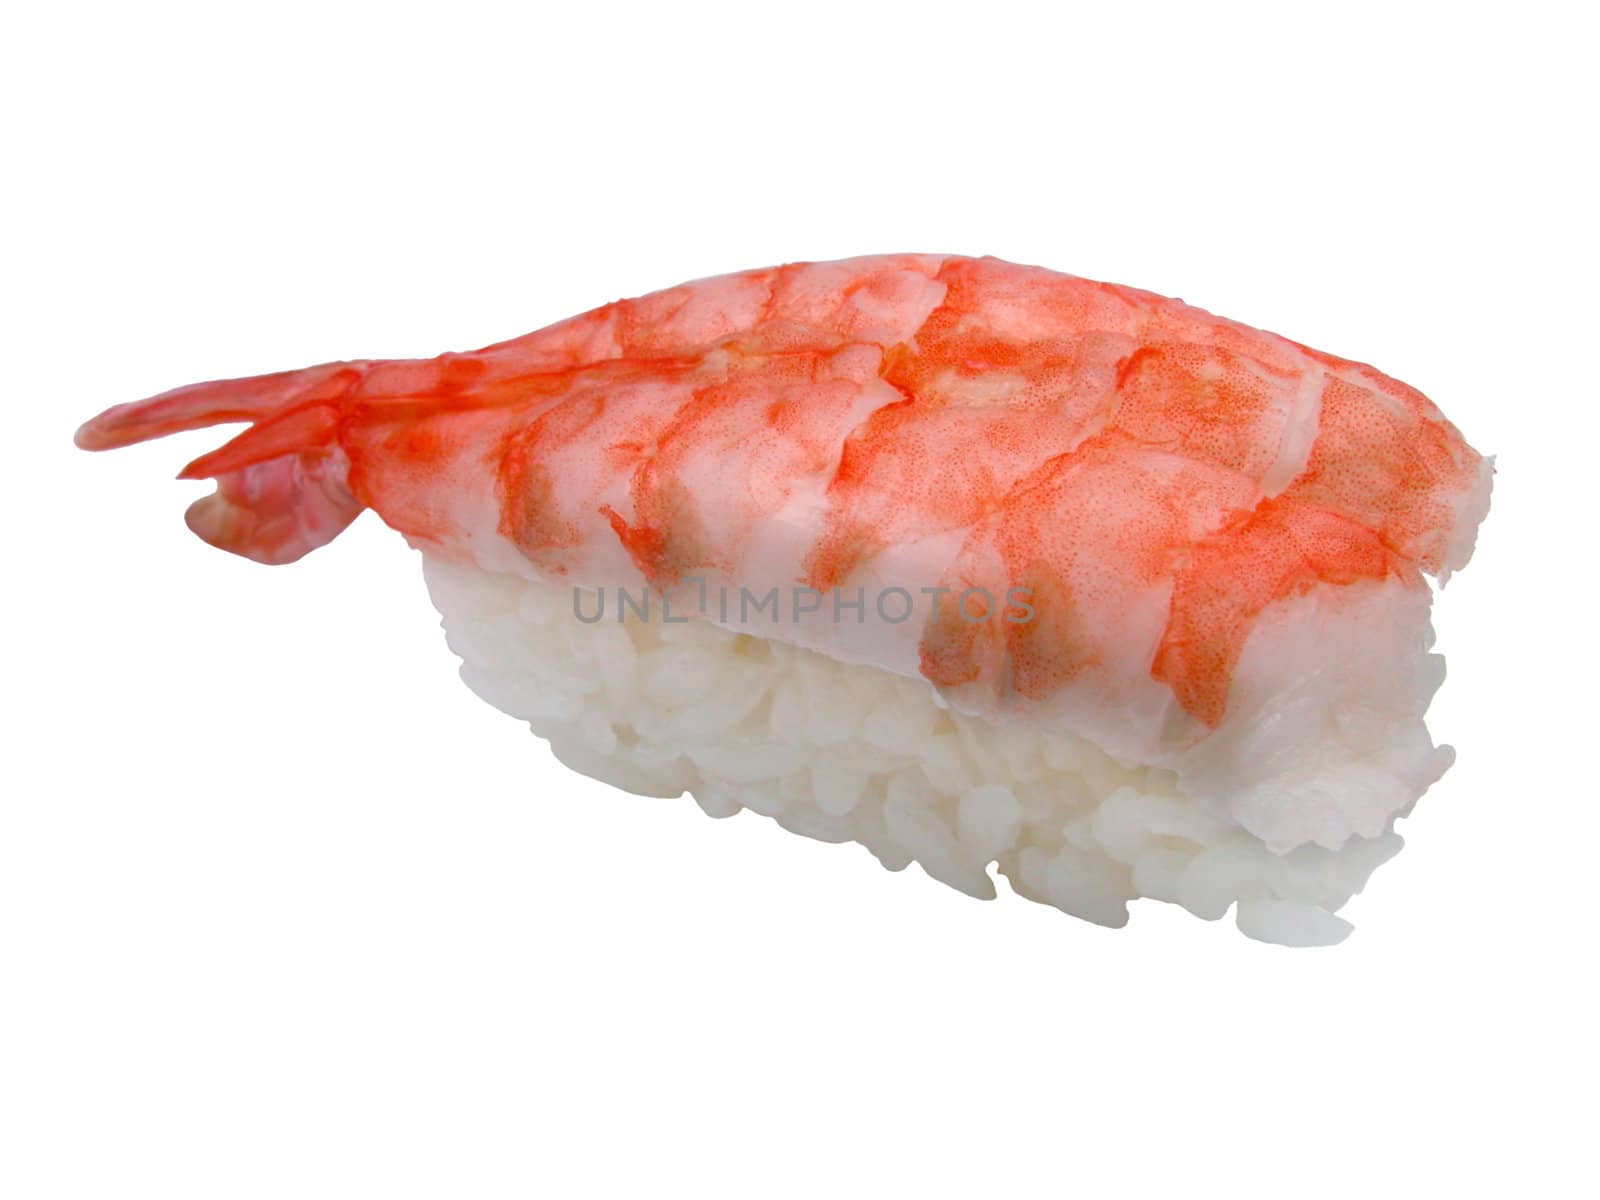 Shrimp sushi isolated against a white background.